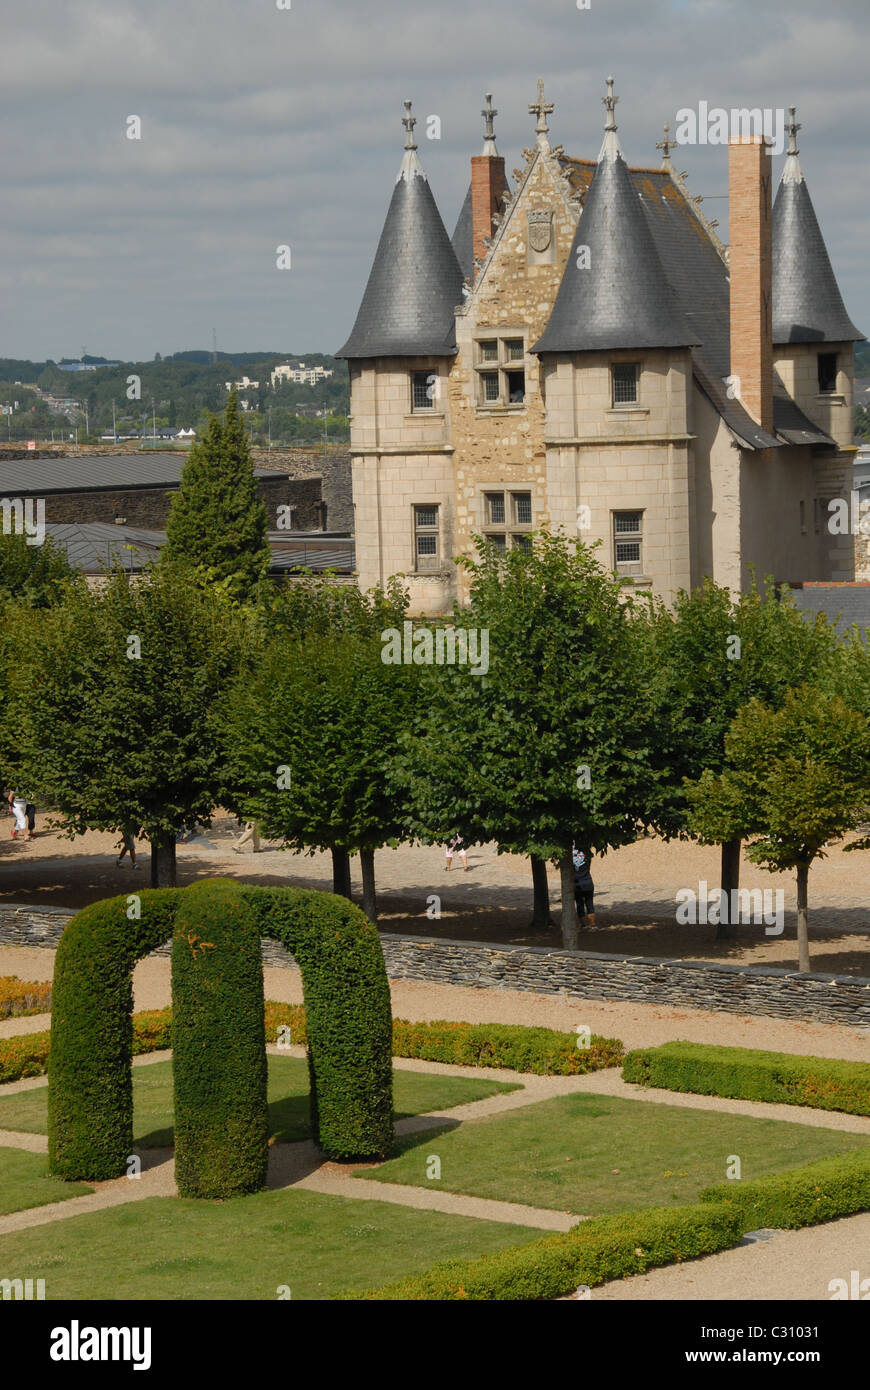 Le château Le château d'Angers dans le domaine du patrimoine mondial de l'Unesco de la vallée de la Loire a été rendu célèbre par le bon roi René. Banque D'Images